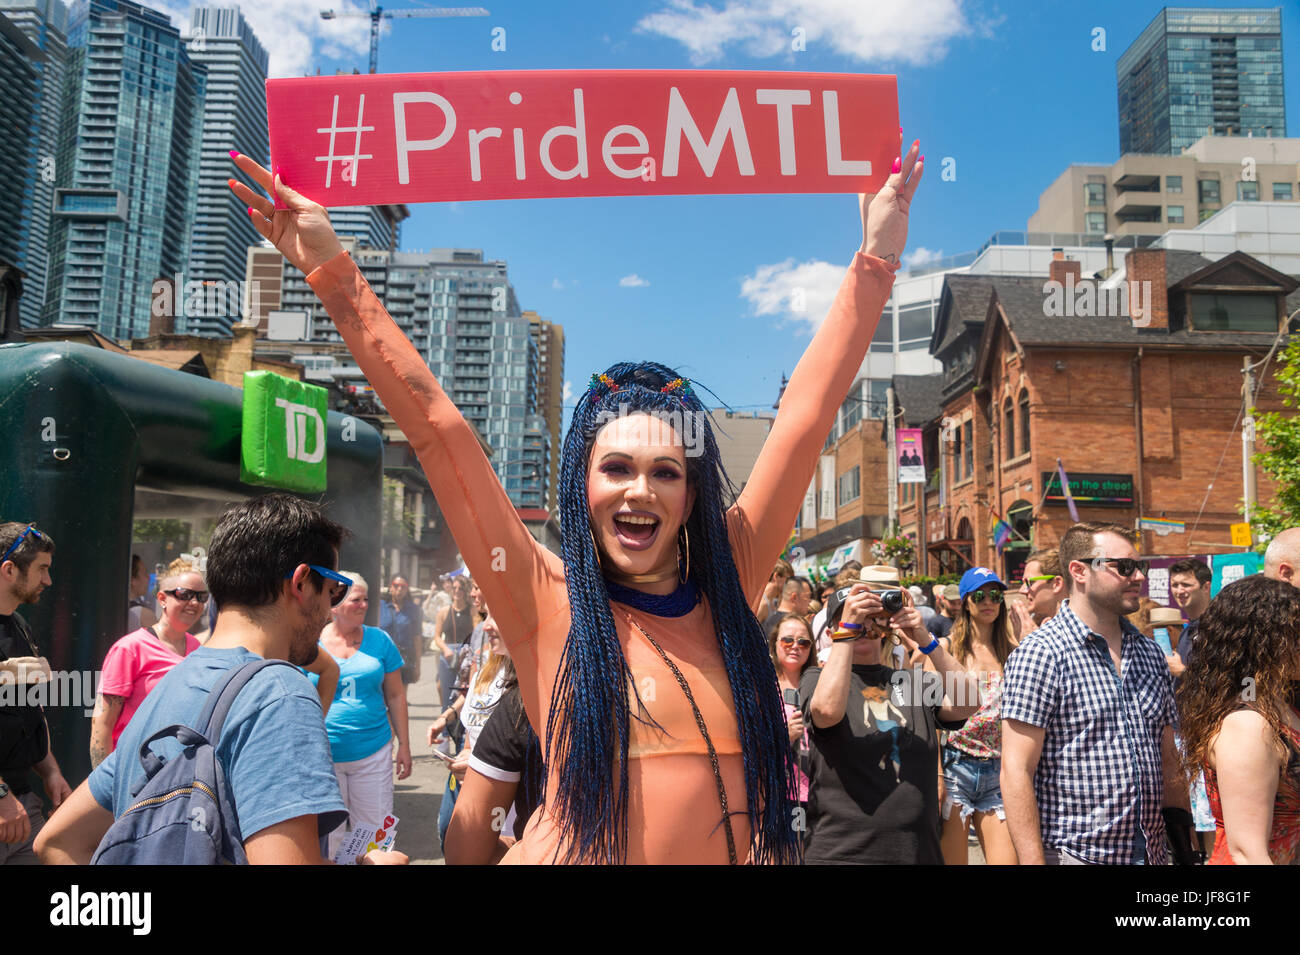 Toronto, Canada - 25 juin 2017 : drag queen avec un panneau promotion Montréal Gay Pride Parade durant la semaine à Toronto Banque D'Images